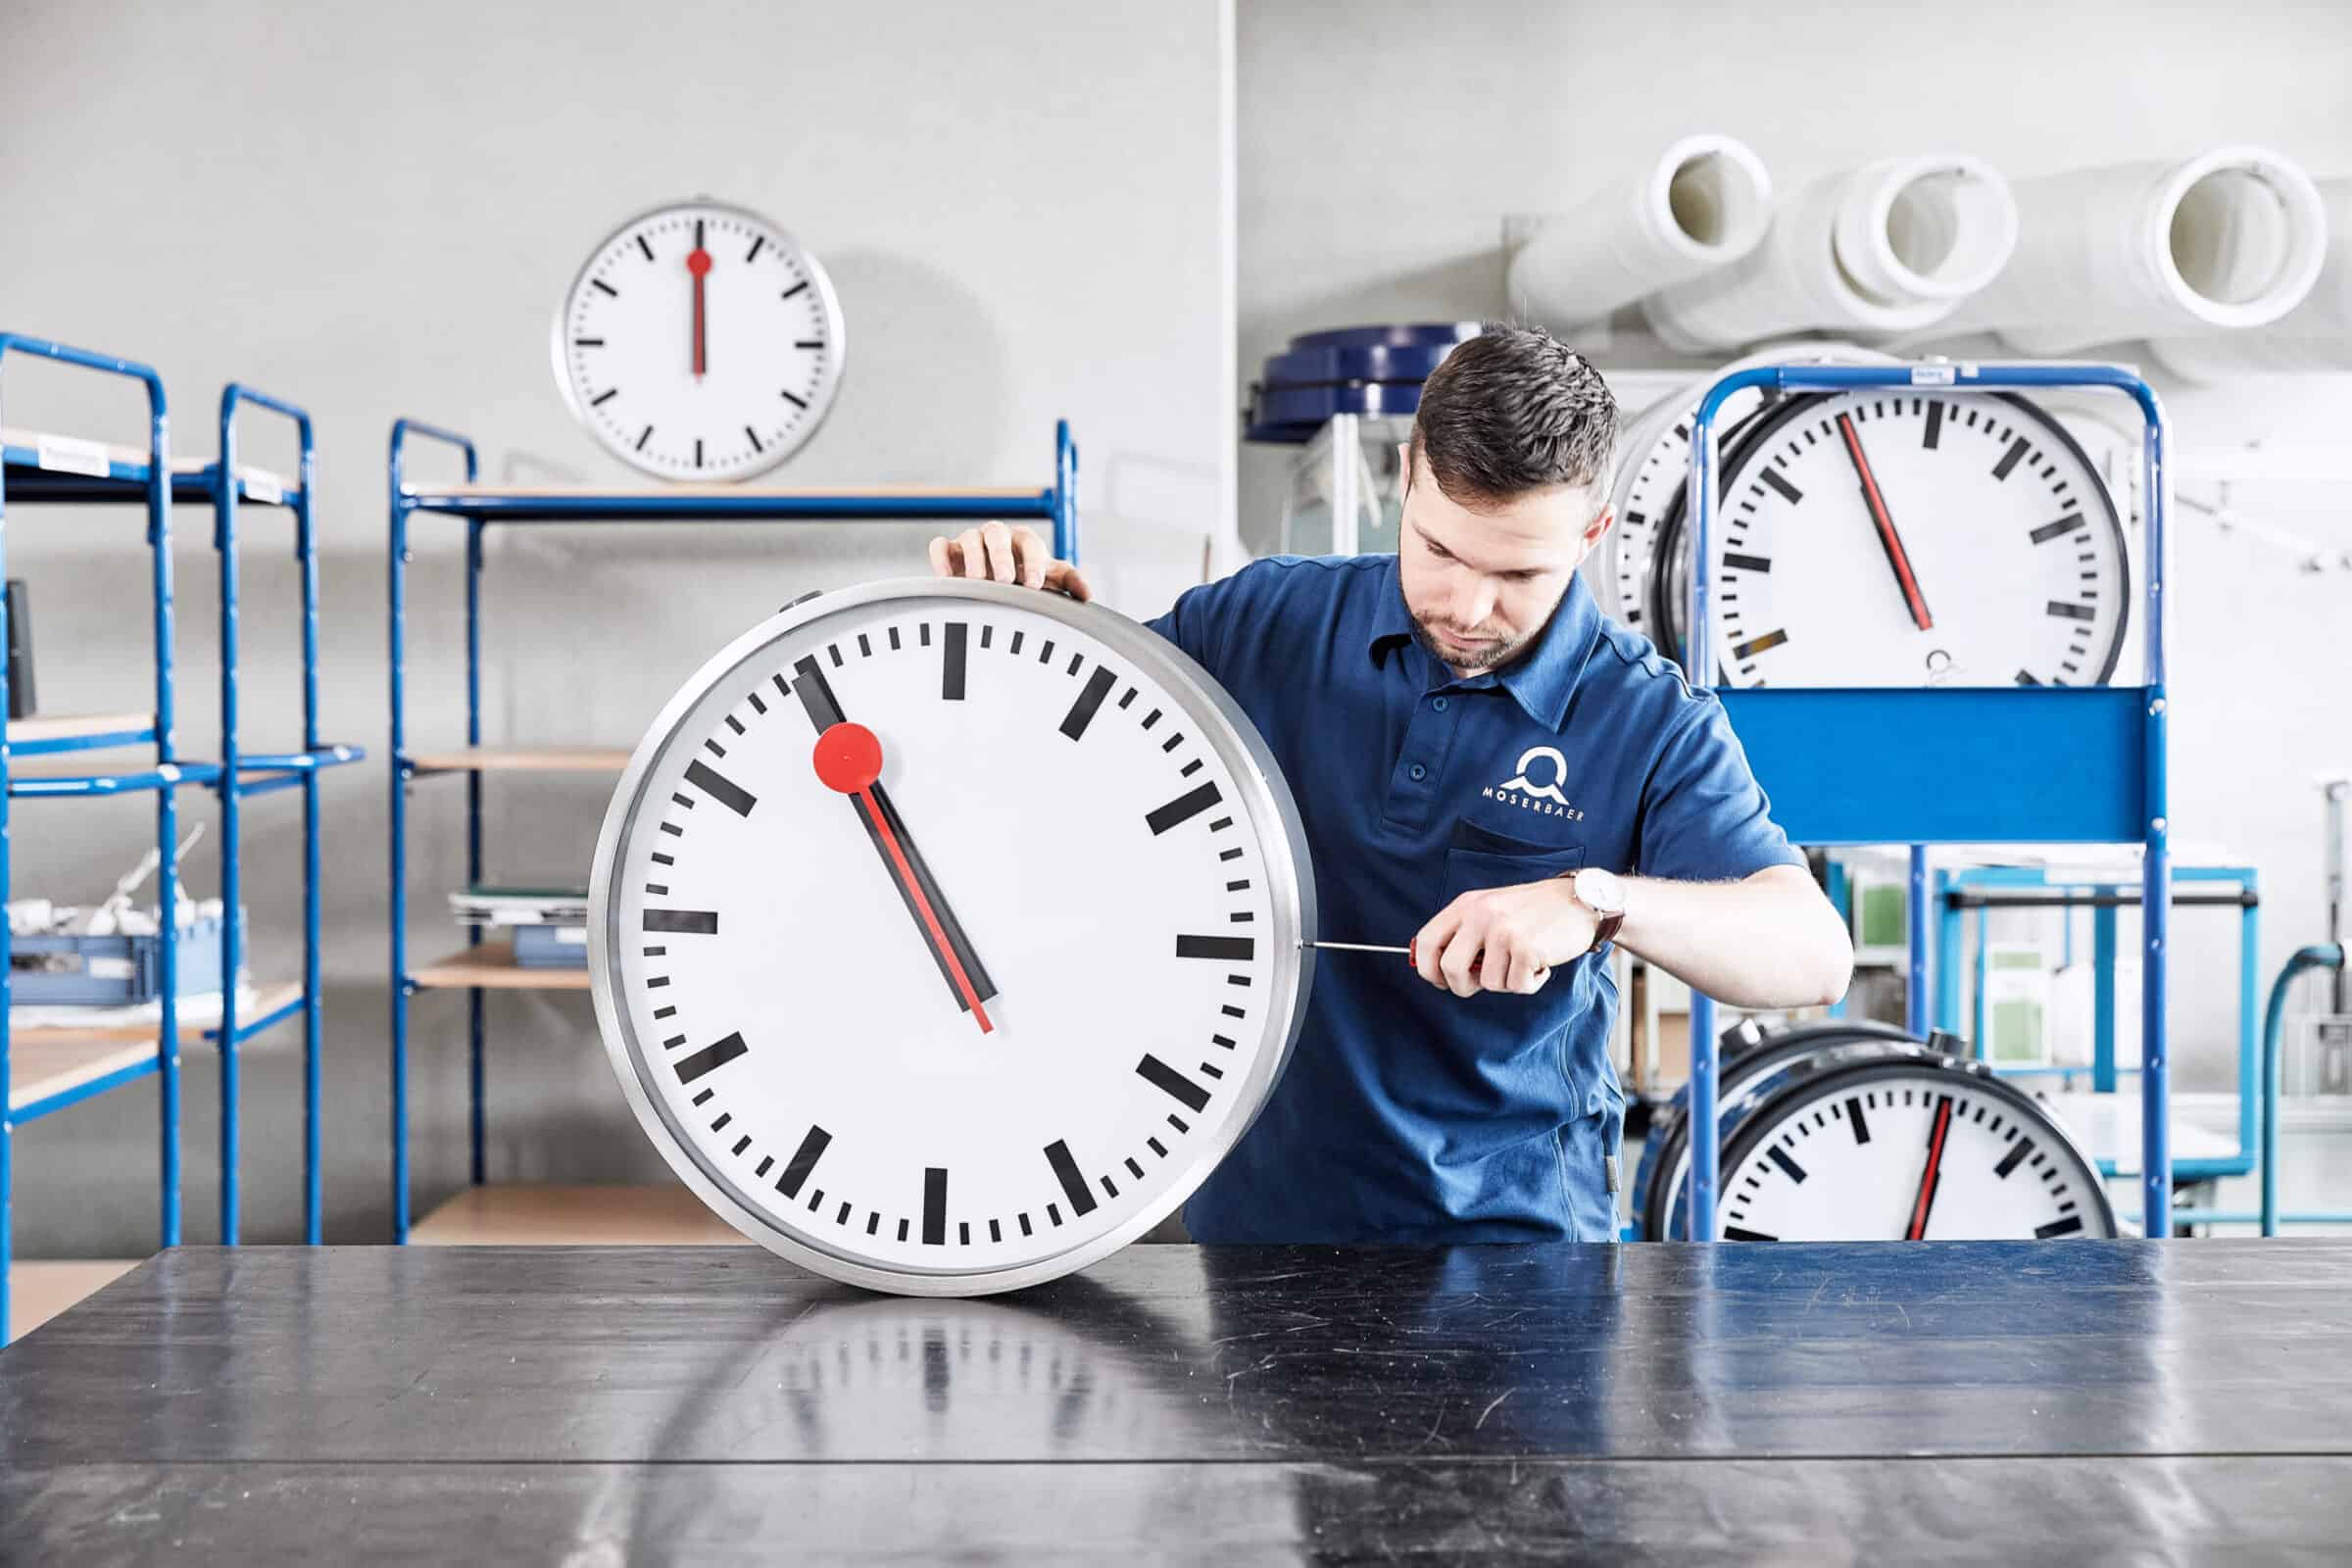 Image d'horloges extérieures analogiques, dont une horloge ferroviaire des CFF, représentant la précision et la qualité de l'heure